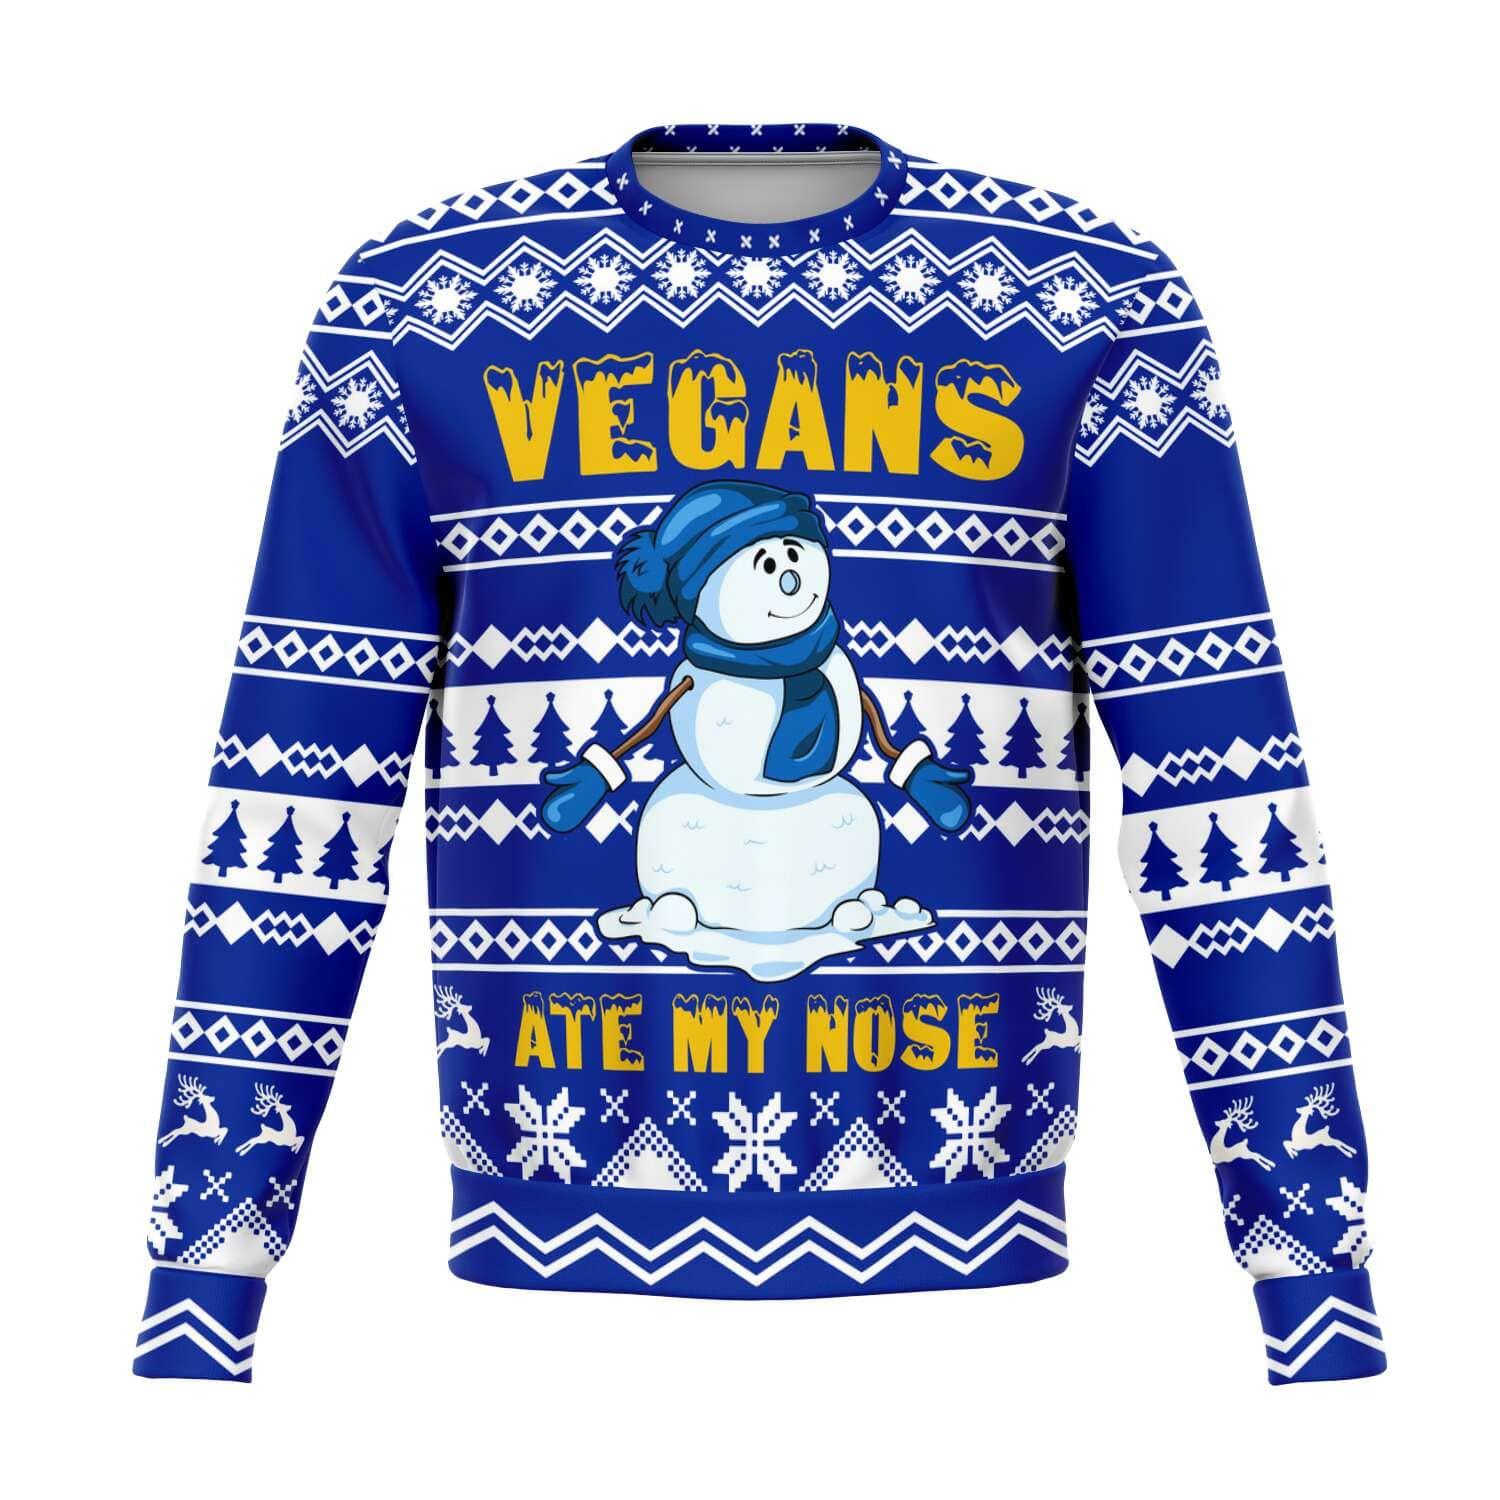 Vegans ate my nose Ugly Christmas Unisex Sweatshirt - TopKoalaTee